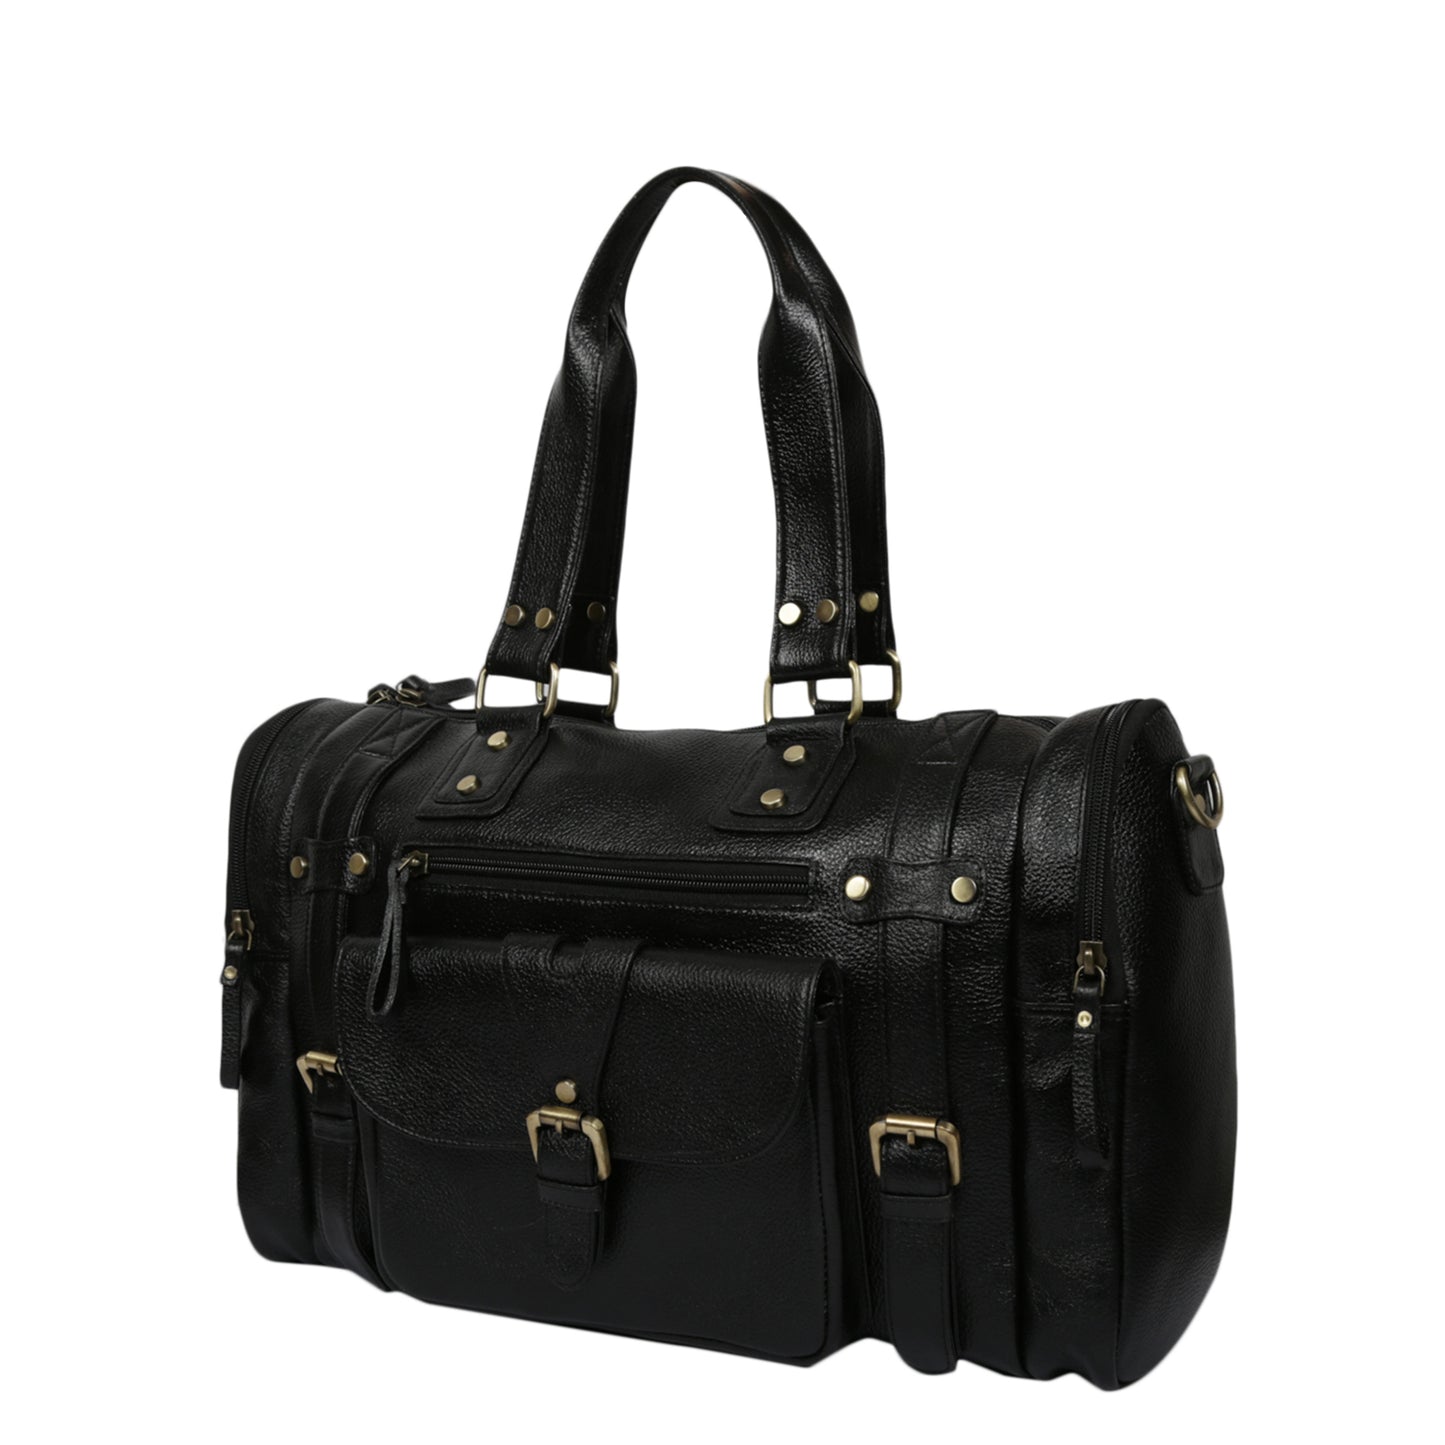 Leather Duffle Bag : Weekender In Jet black